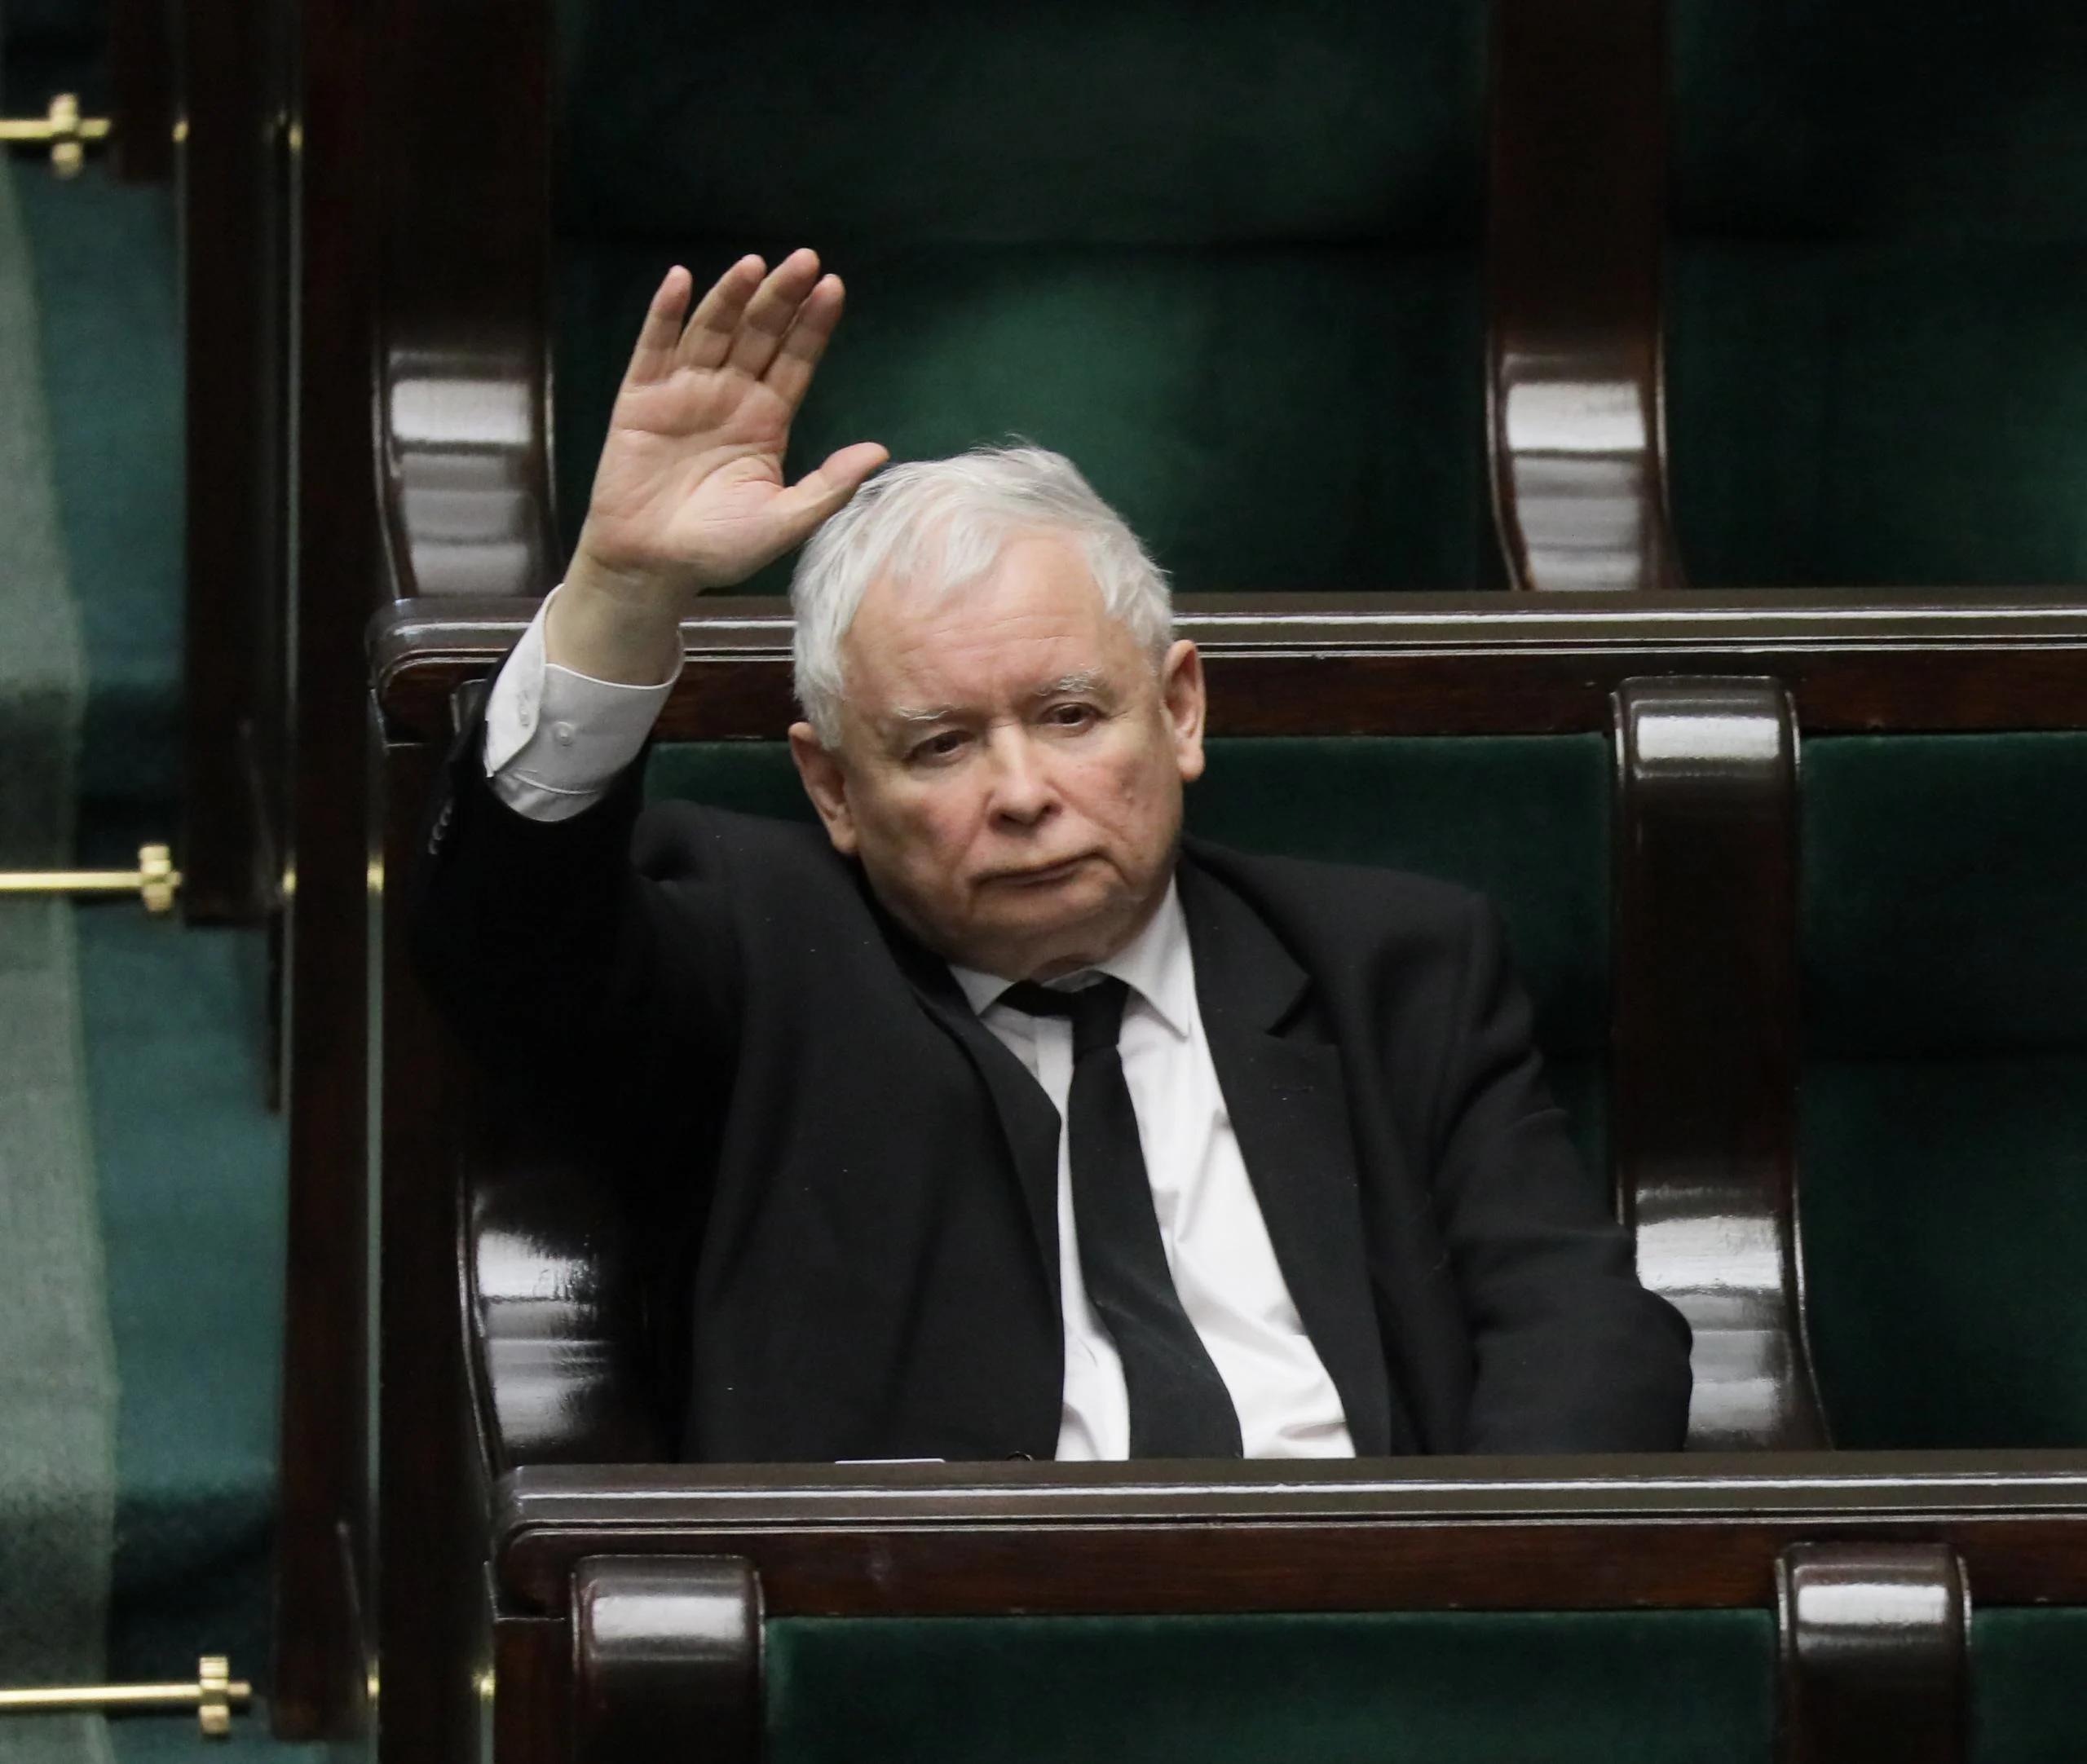 Jarosław Kaczyński głosuje w Sejmie. Ustawa Lex TVN przyjęta